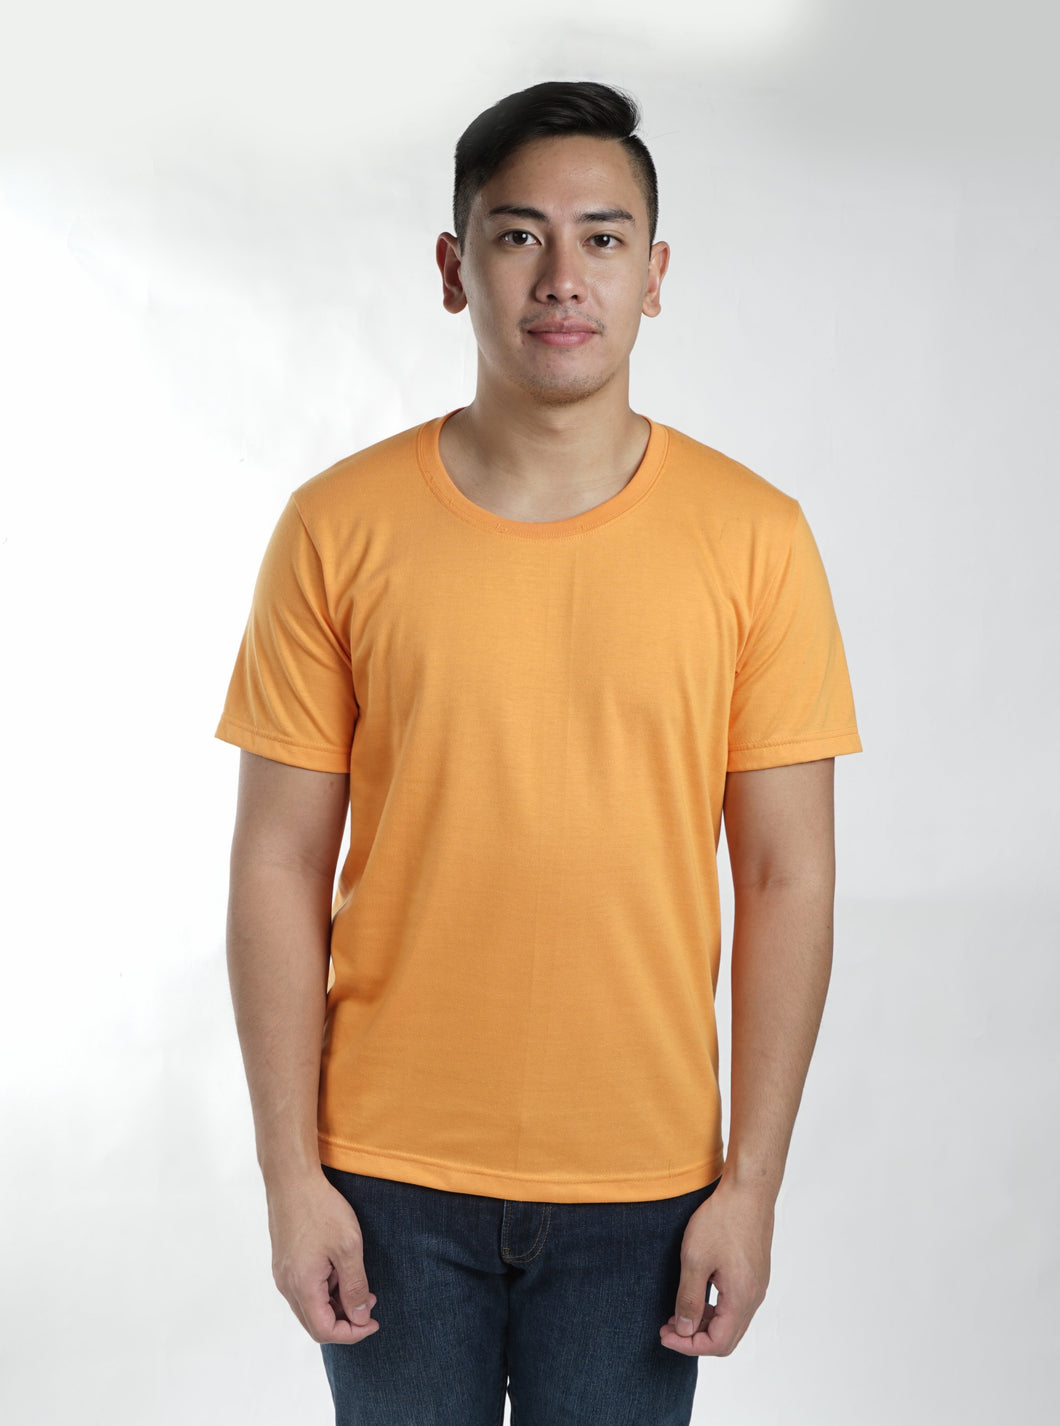 Popsicle Orange Sun Plain T-Shirt